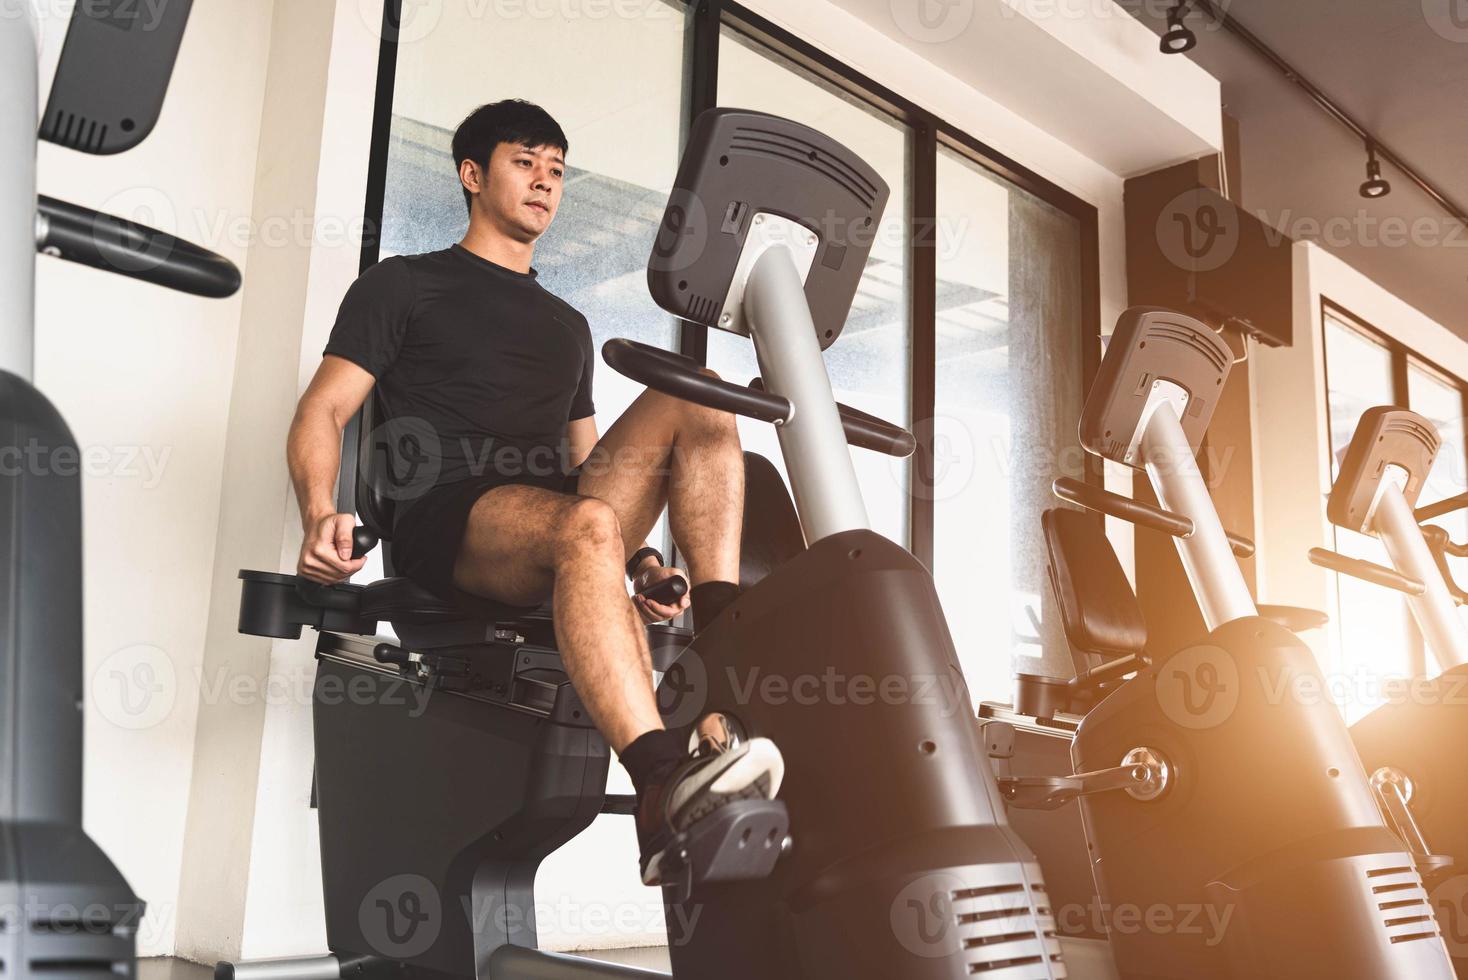 Hombre joven asiático del deporte que monta la bicicleta estacionaria en el gimnasio foto